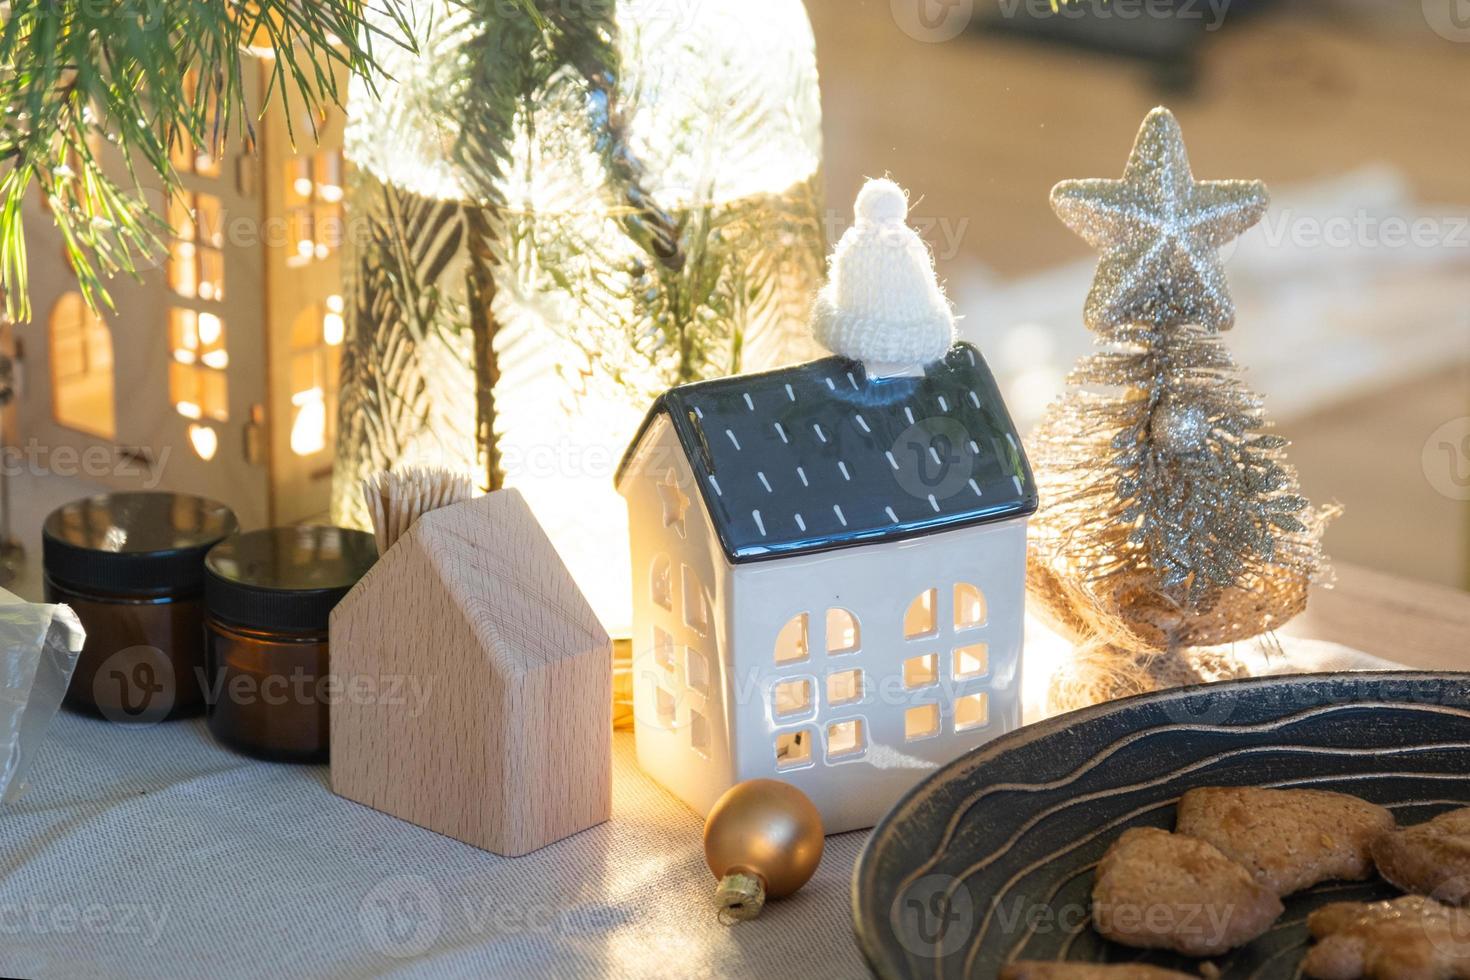 festlig jul dekor i tabell, hemlagad kakor för frukost, bageri småkakor. mysigt Hem, jul träd med fe- lampor girlanger. ny år, jul humör foto